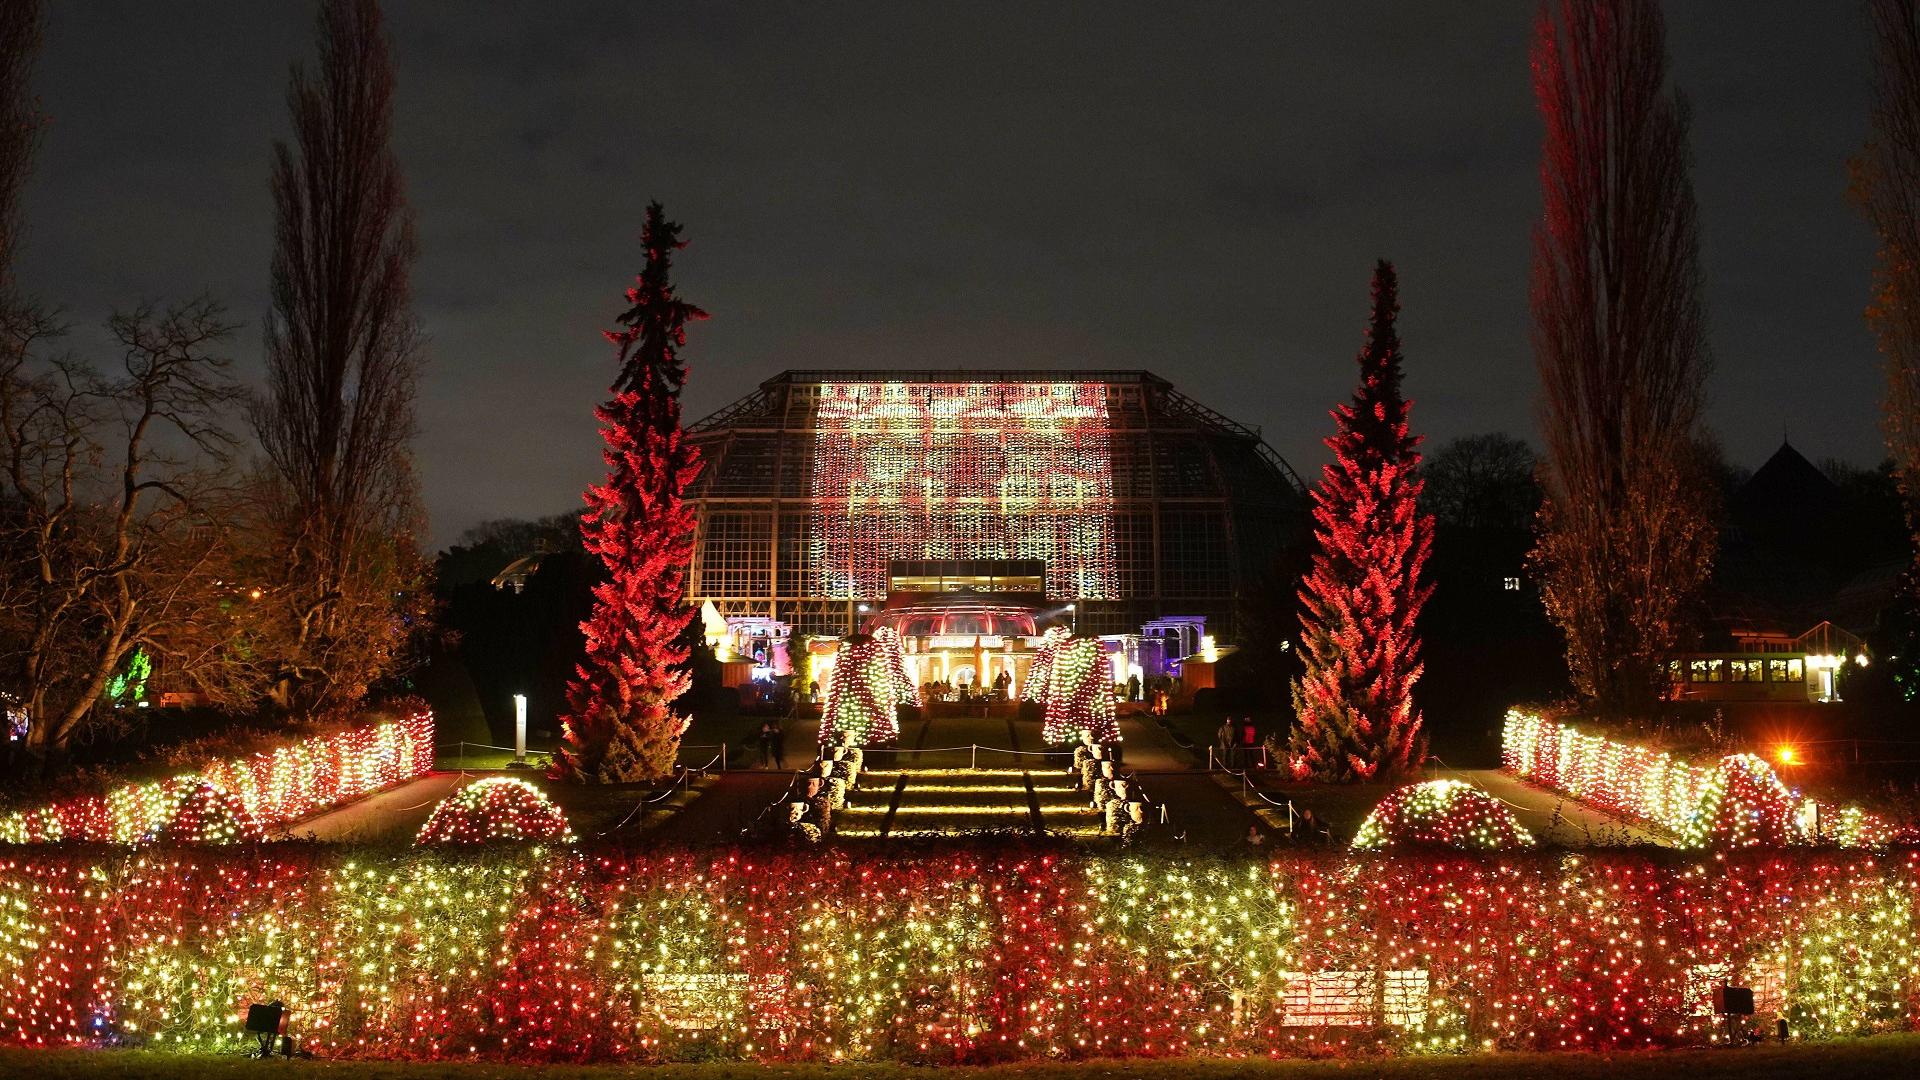 Lichterspektakel im Christmas Garden Berlin